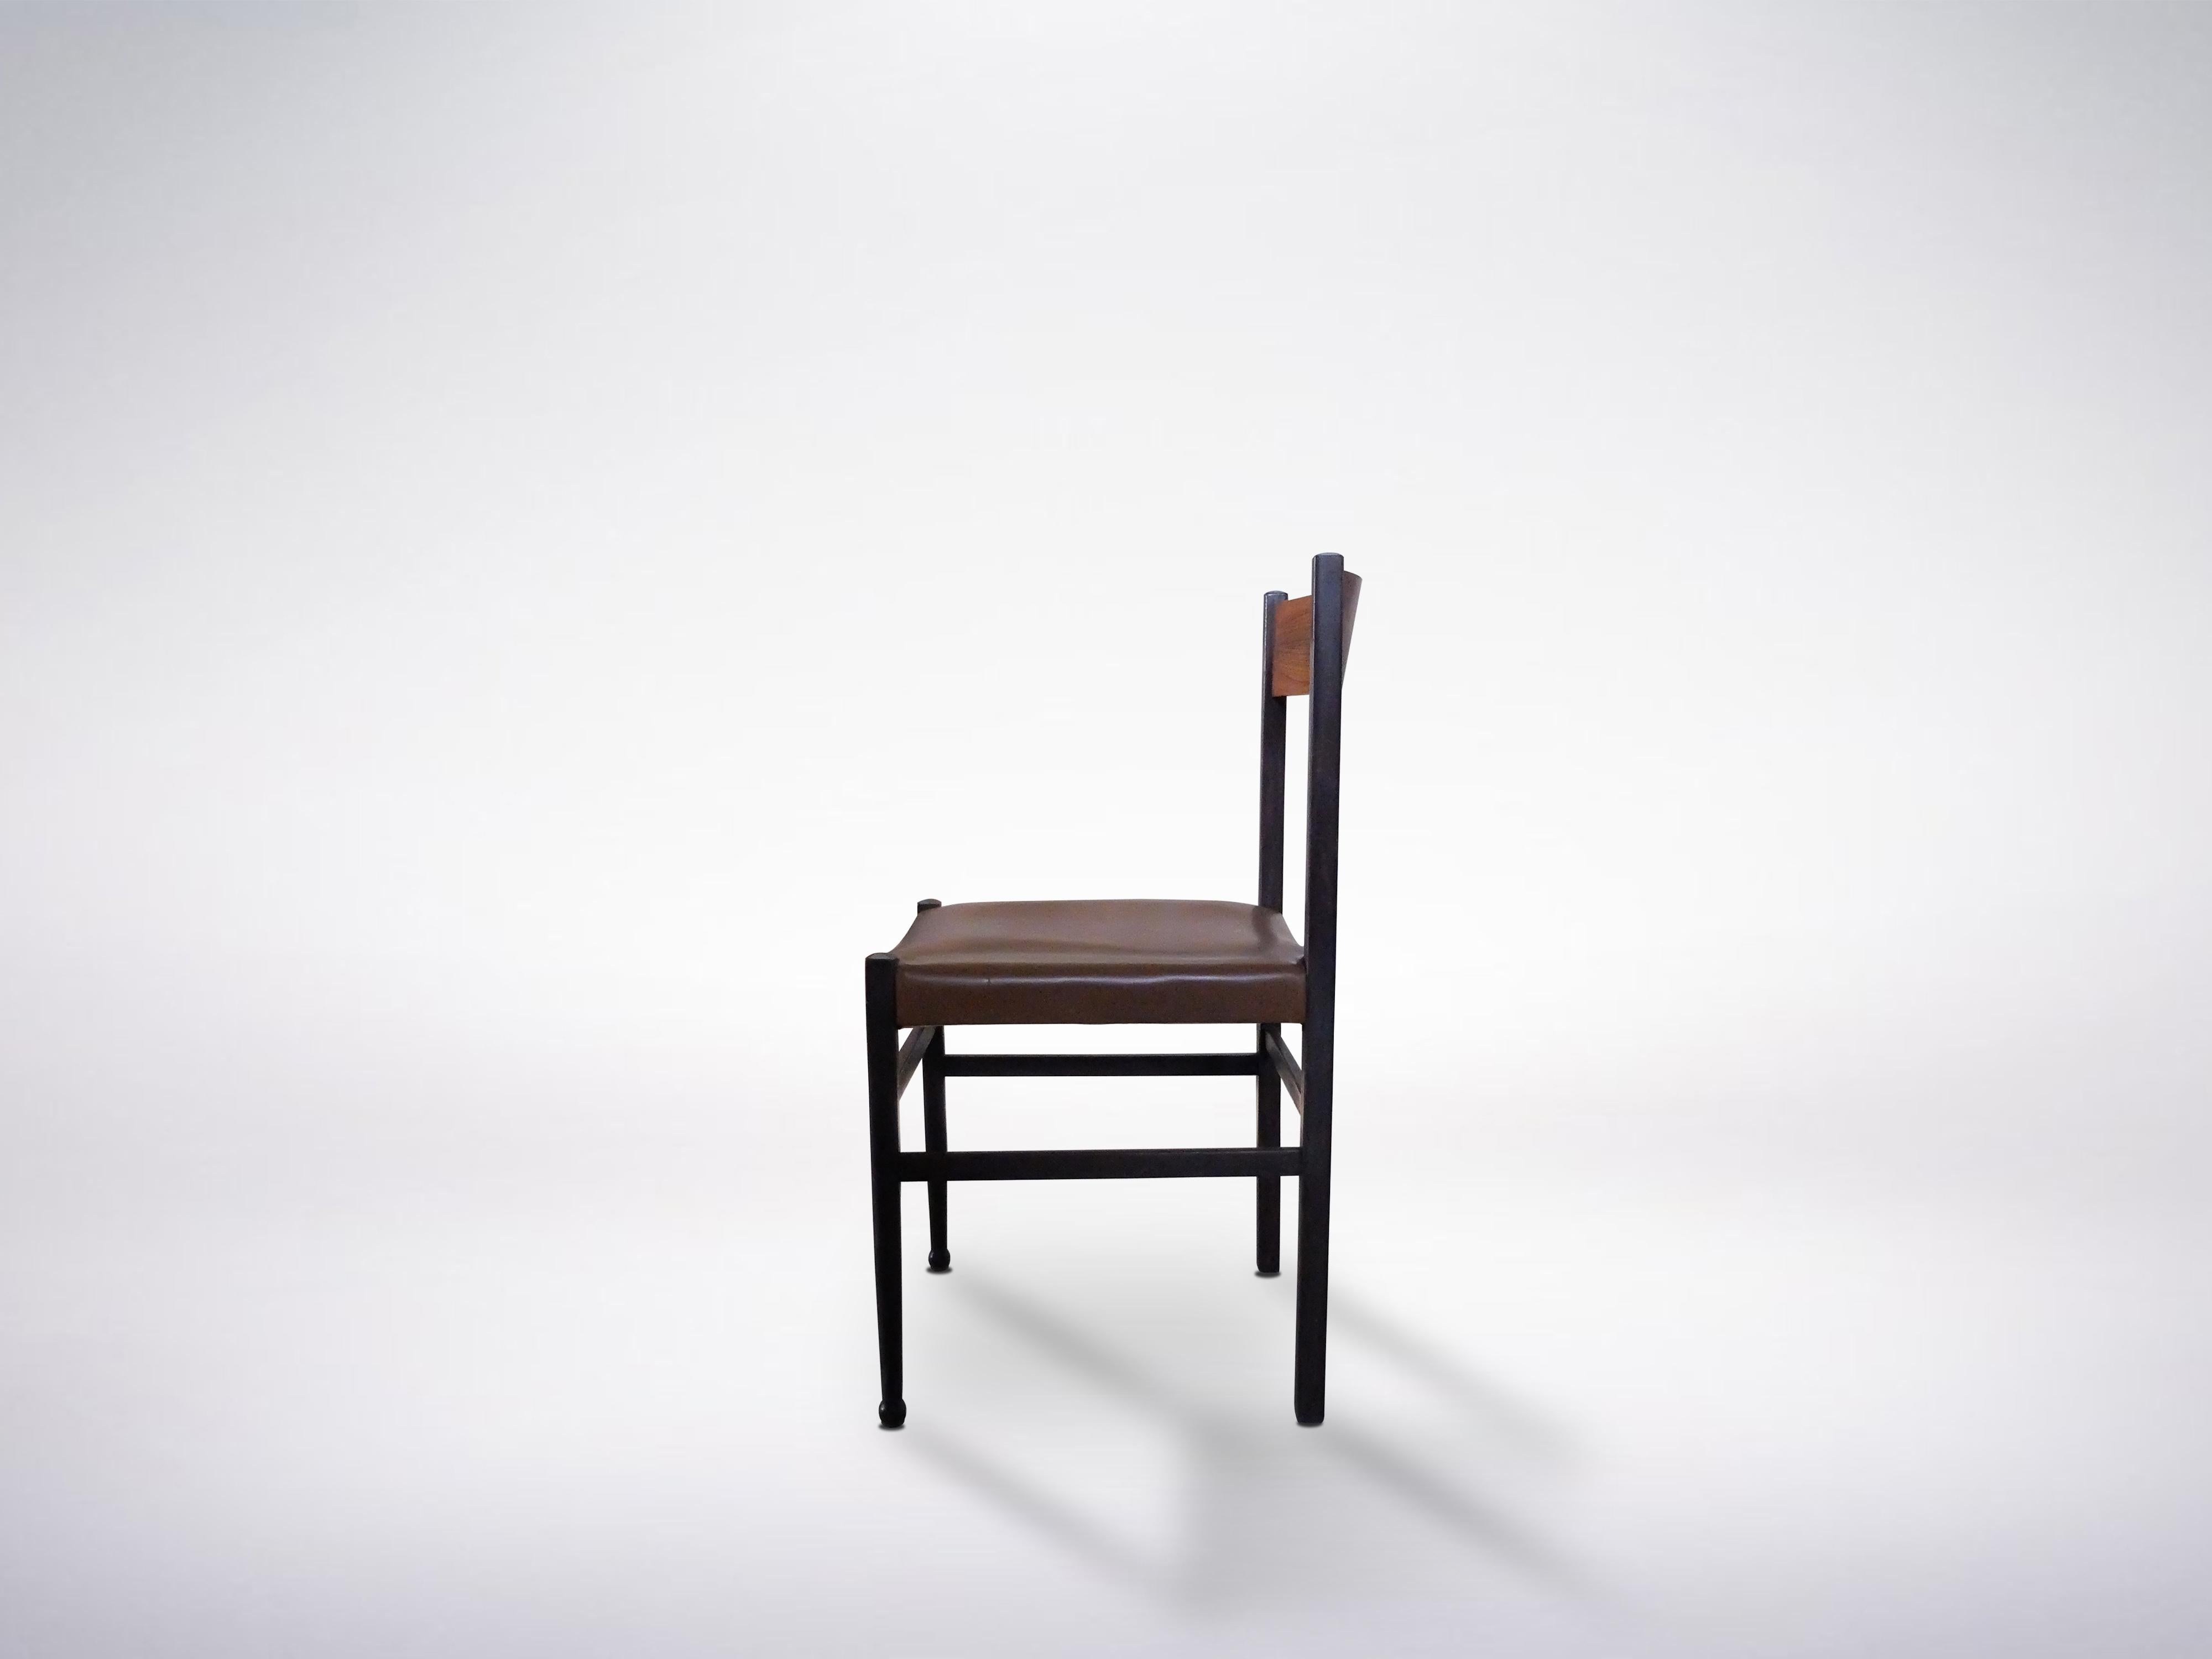 Wunderschönes Set aus 4 Holzstühlen von Gianfranco Frattini, 1950er Jahre: eine perfekte Ergänzung zu den italienischen Stühlen der Jahrhundertmitte in einem gut eingerichteten Esszimmer.

Subtile geometrische Übergänge zwischen Kurven und Linien